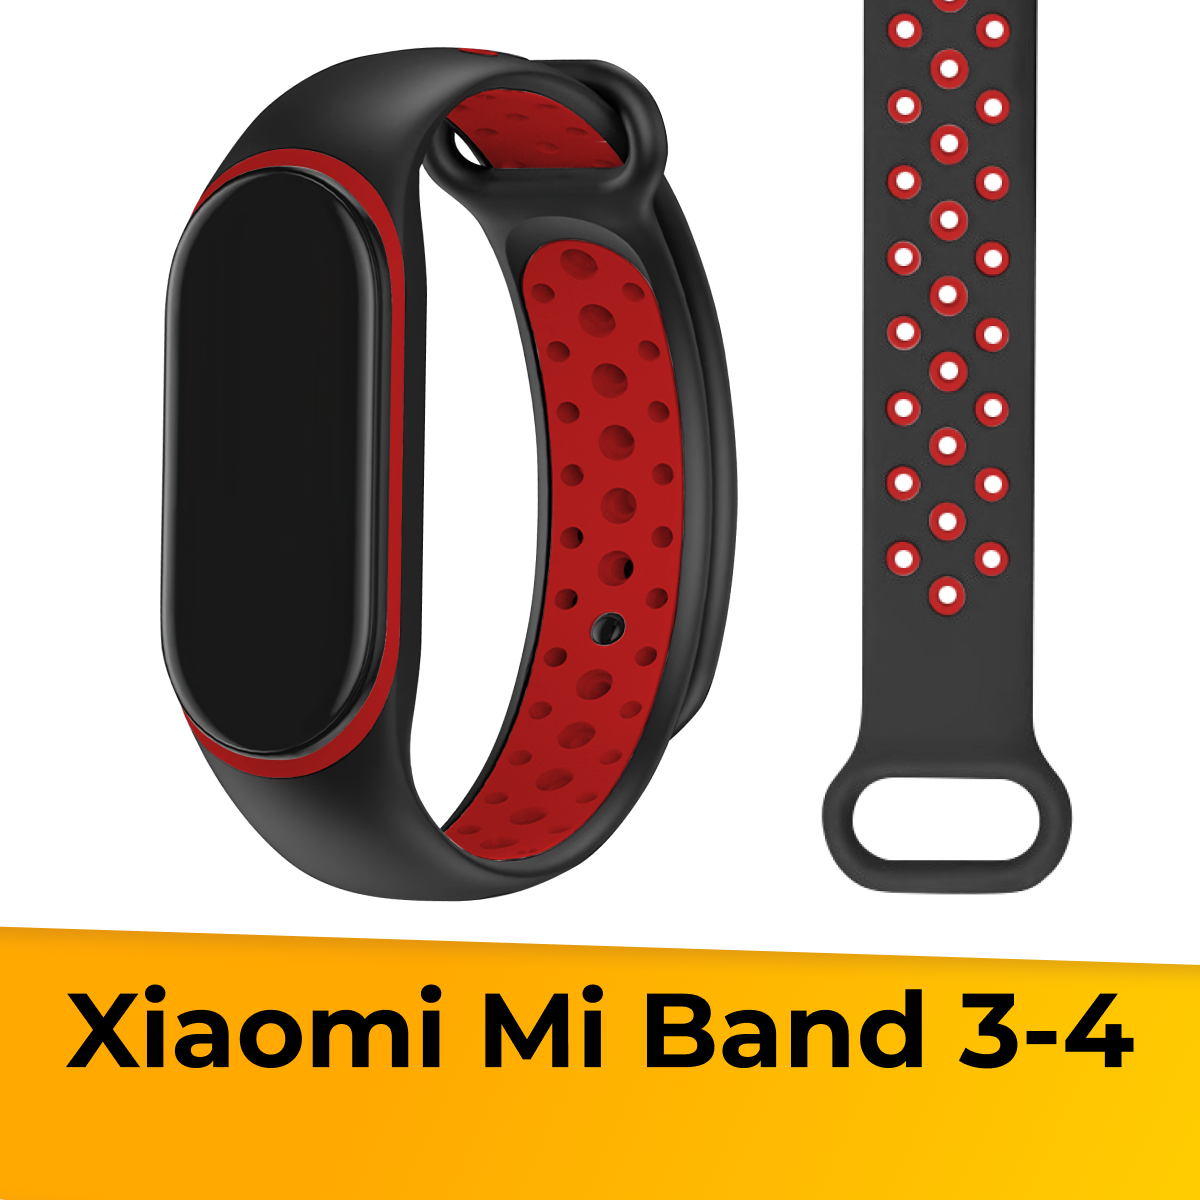 Силиконовый ремешок с перфорацией для фитнес трекера Xiaomi Mi Band 3 и 4 / Сменный спортивный браслет на часы Сяоми Ми Бэнд 3 и 4 / Черно-красный